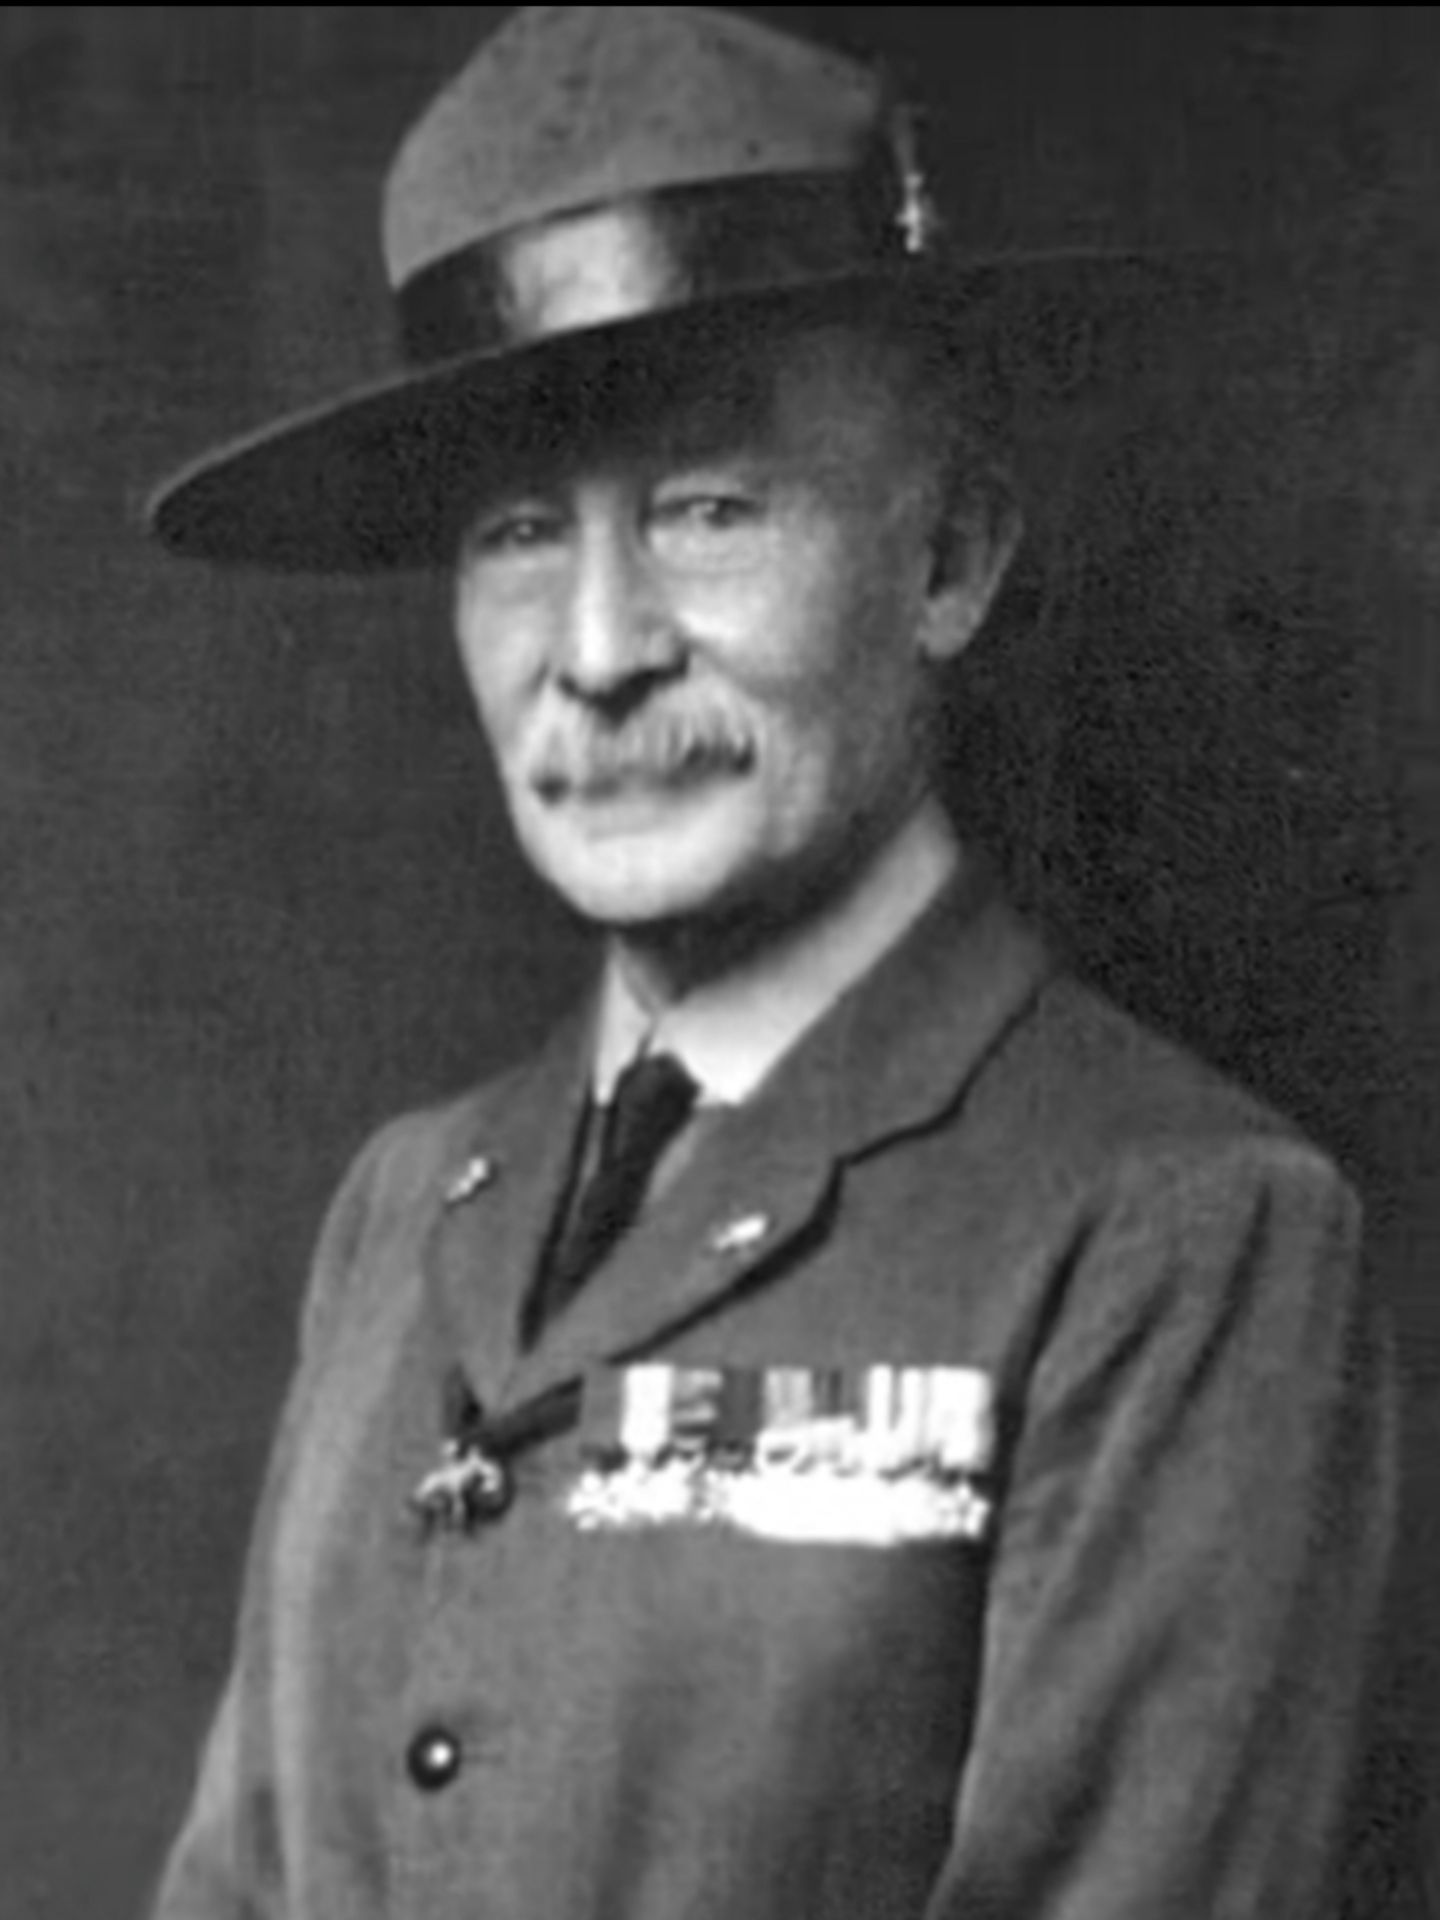 Baden Powell. Baden Powell dikenal sebagai Bapak Pandu Sedunia yang lahir pada tanggal 22 Februari 1857